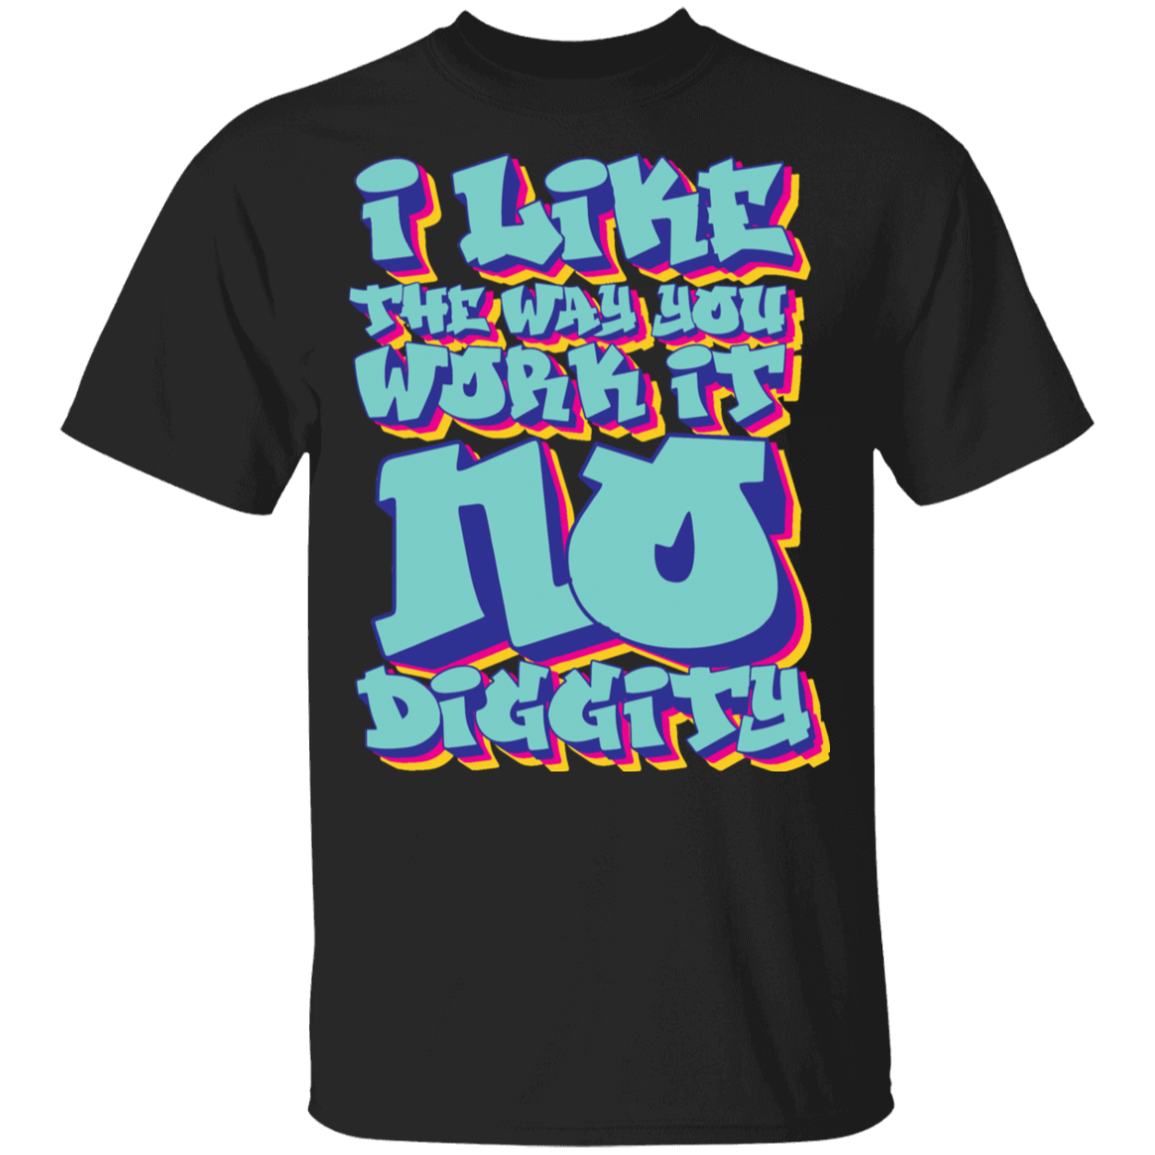 No Diggity Youth T-Shirt